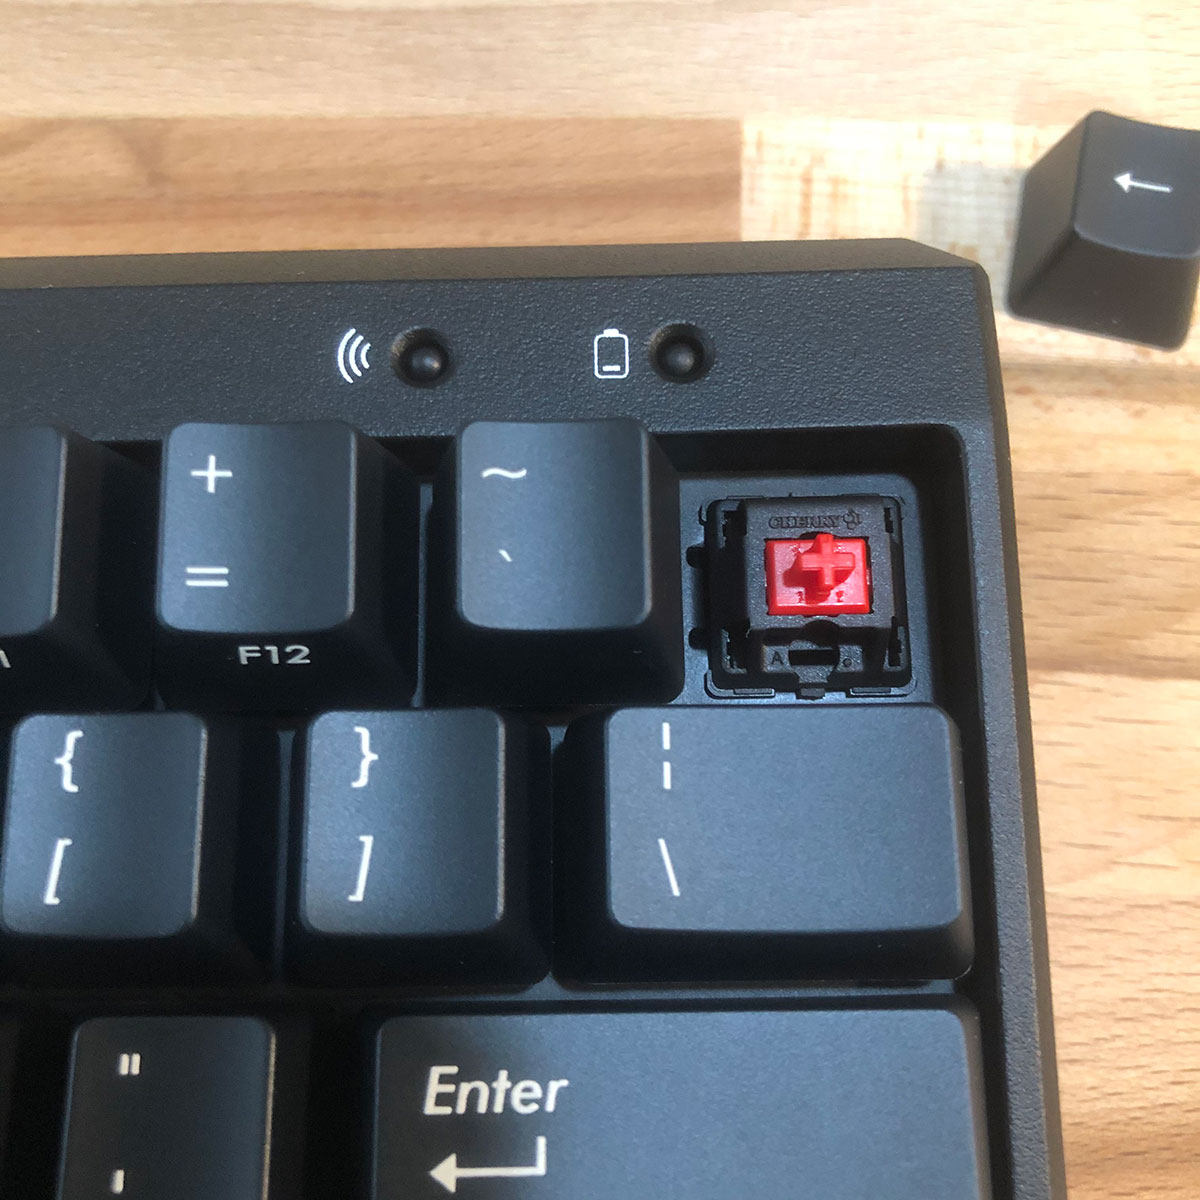 Filco 紅軸 無線 藍芽 機械鍵盤 開箱